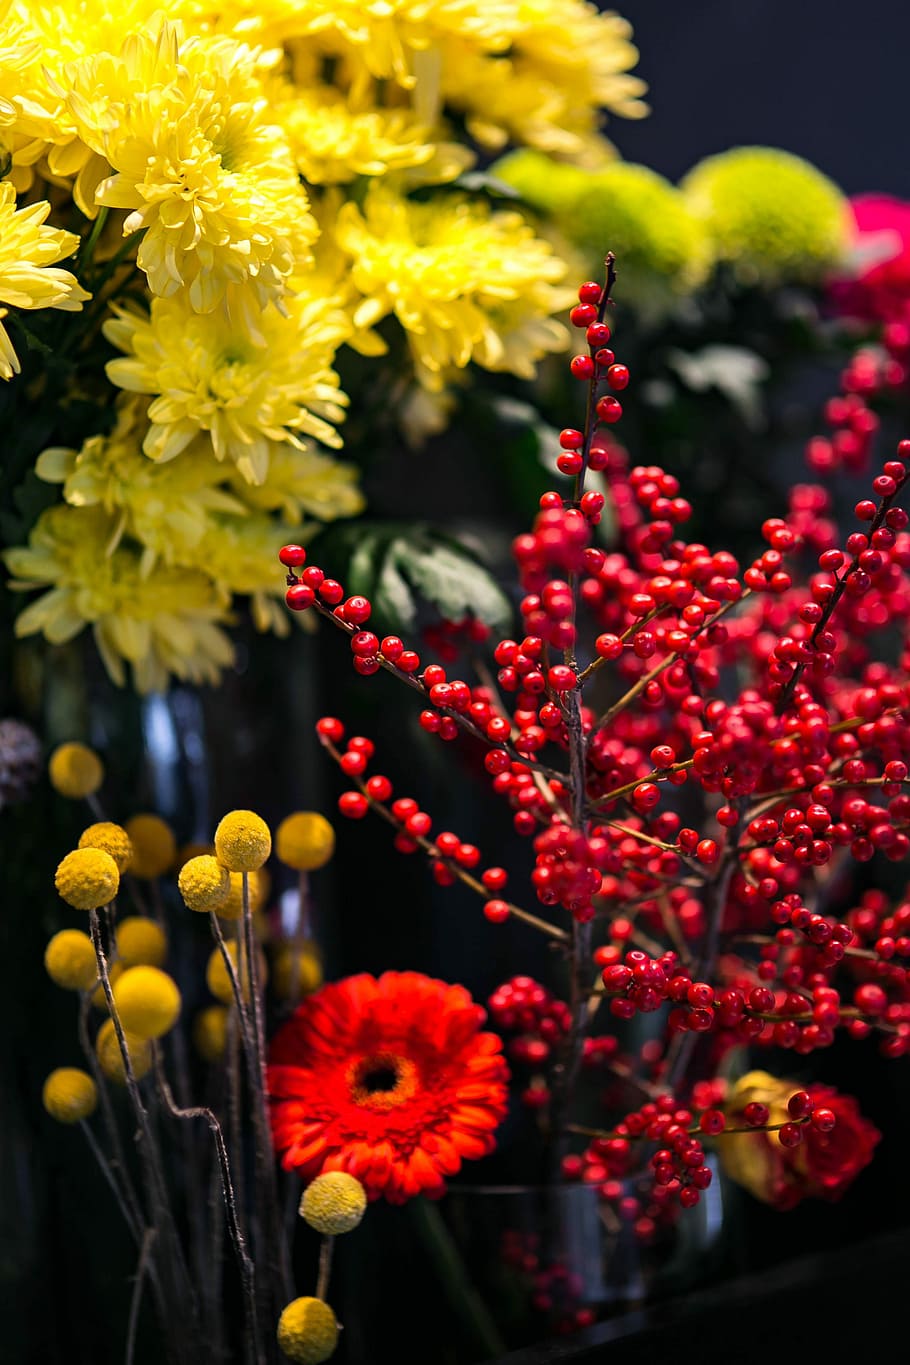 merah, rowan, susunan warna-warni, bunga, warna-warni, susunan, flora, kuning, buket, cantik